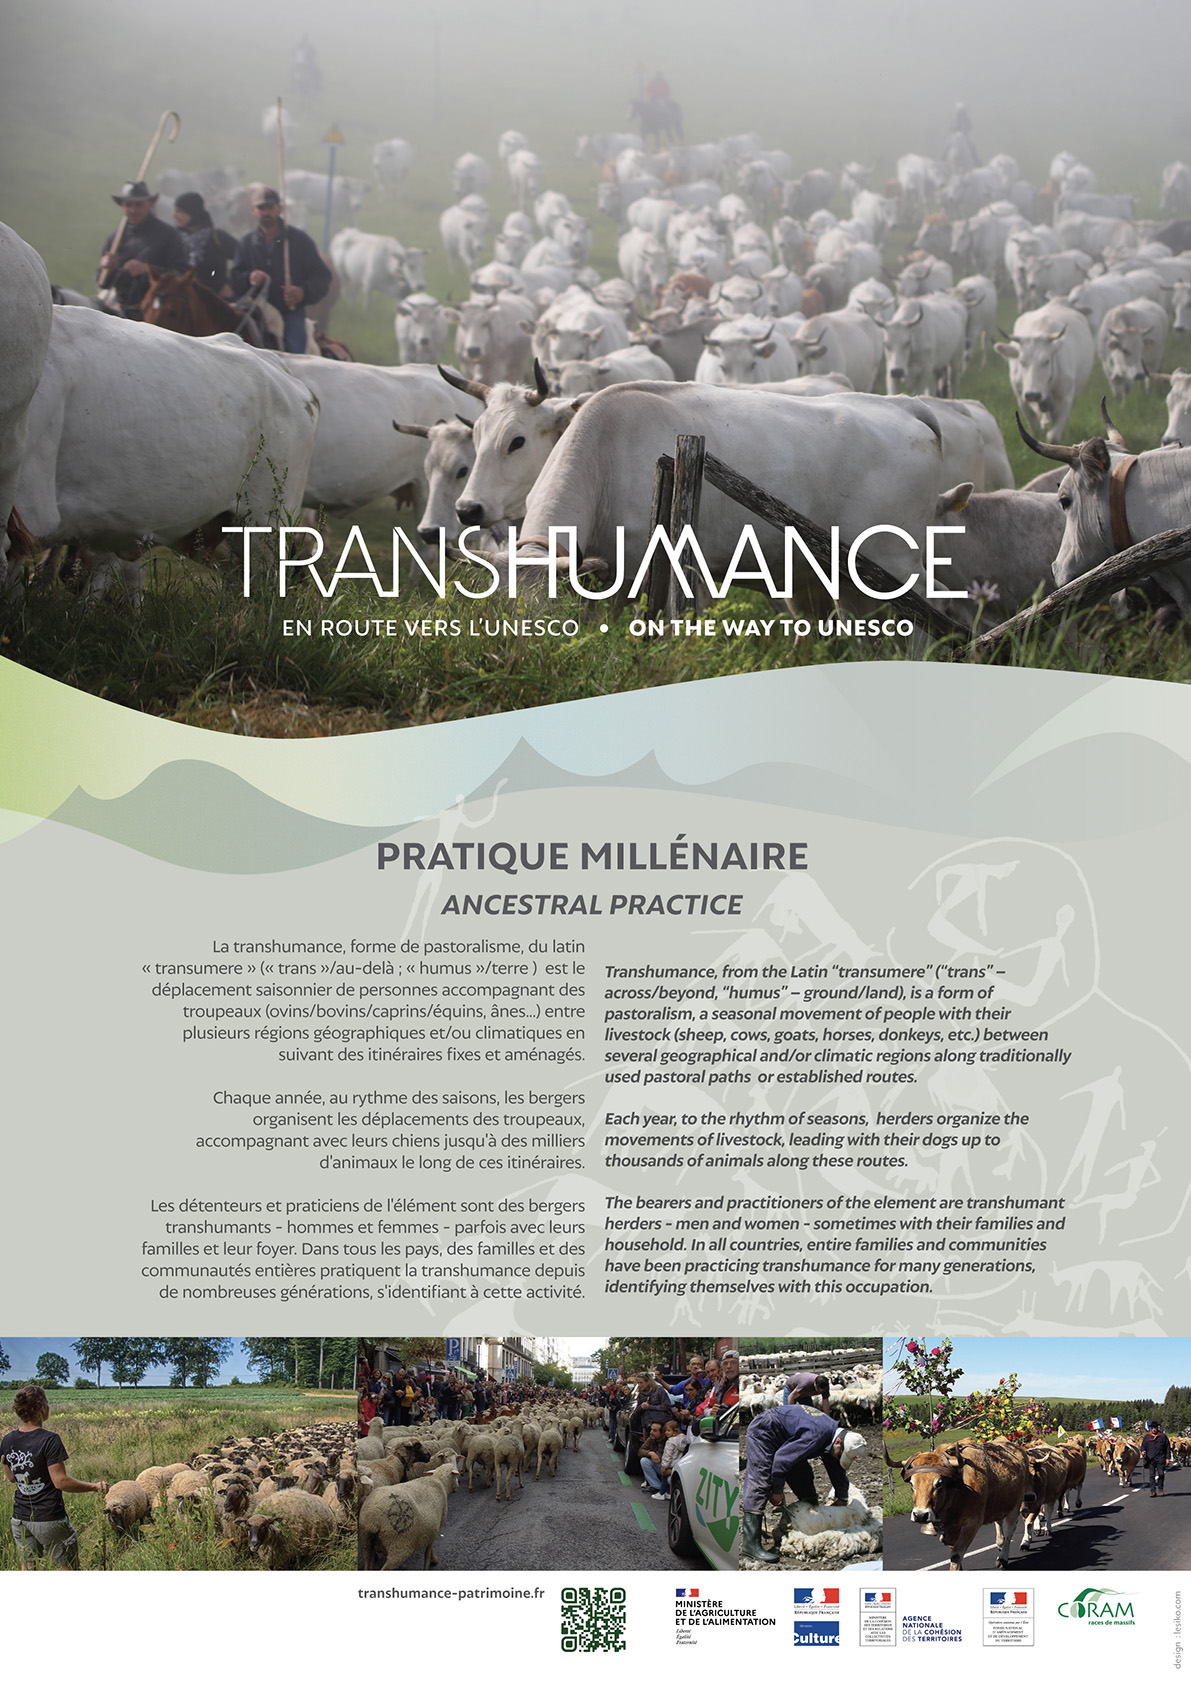 Affiche en français et anglais : une pratique millénaire de la transhumance